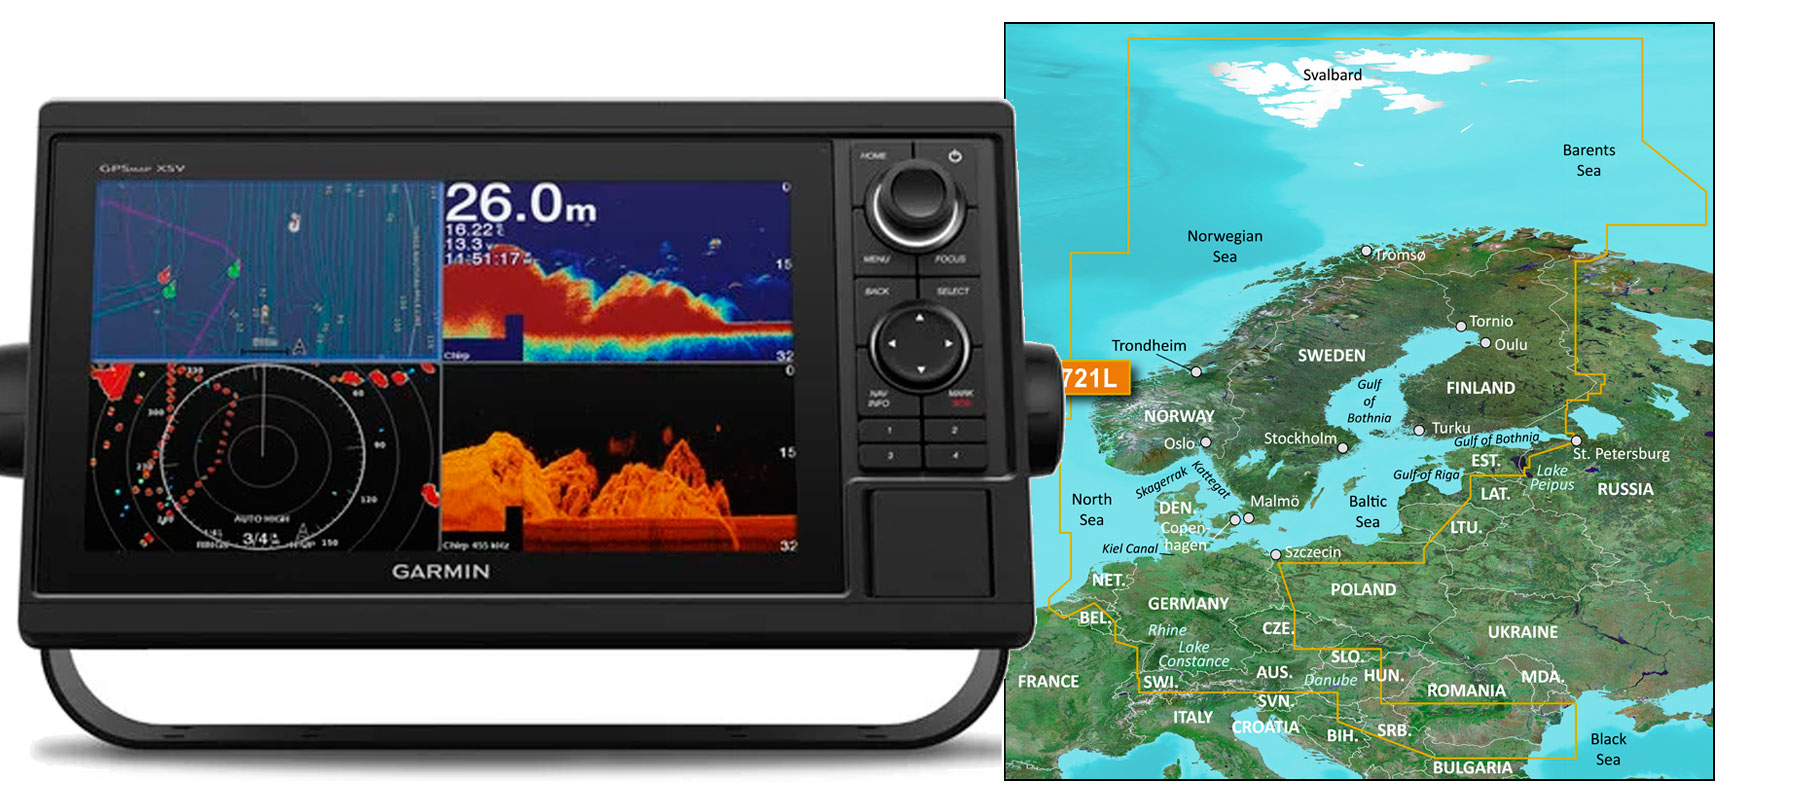 Garmin GPSmap 1022xsv med søkort bådudstyr til lavpris hos Marinetorvet